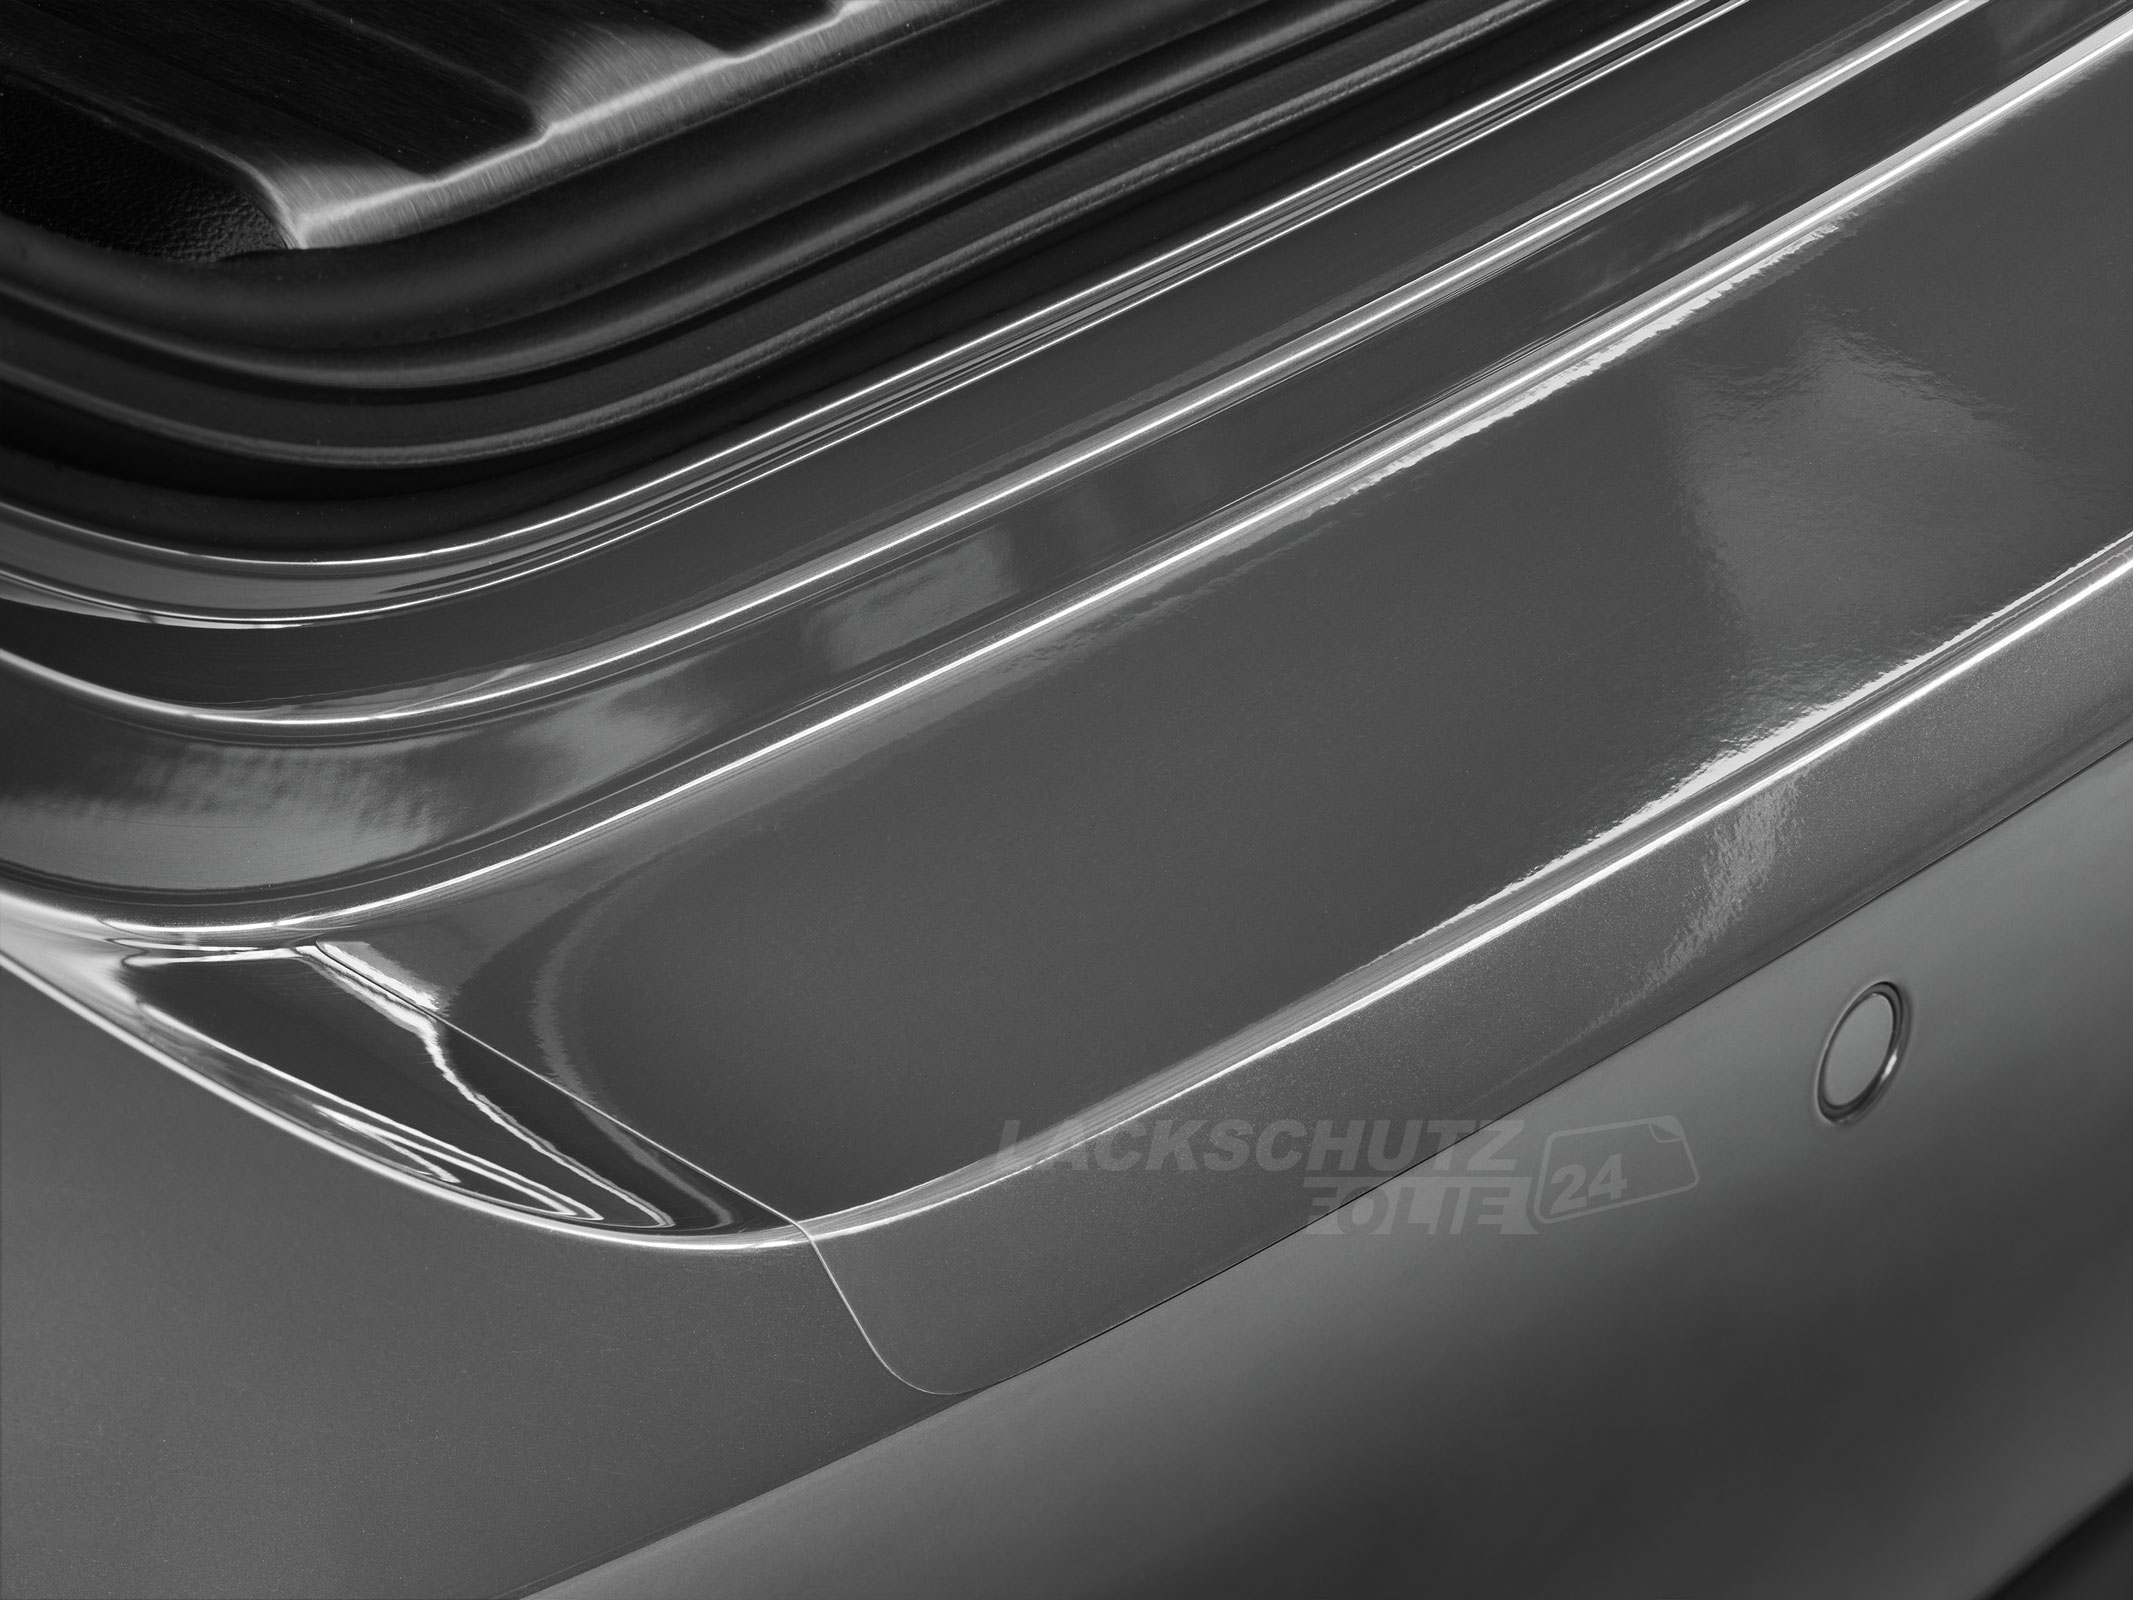 Ladekantenschutzfolie - Transparent Glatt Hochglänzend 240 µm stark für Audi A6 Limousine C5, Typ 4B, bis BJ 2004